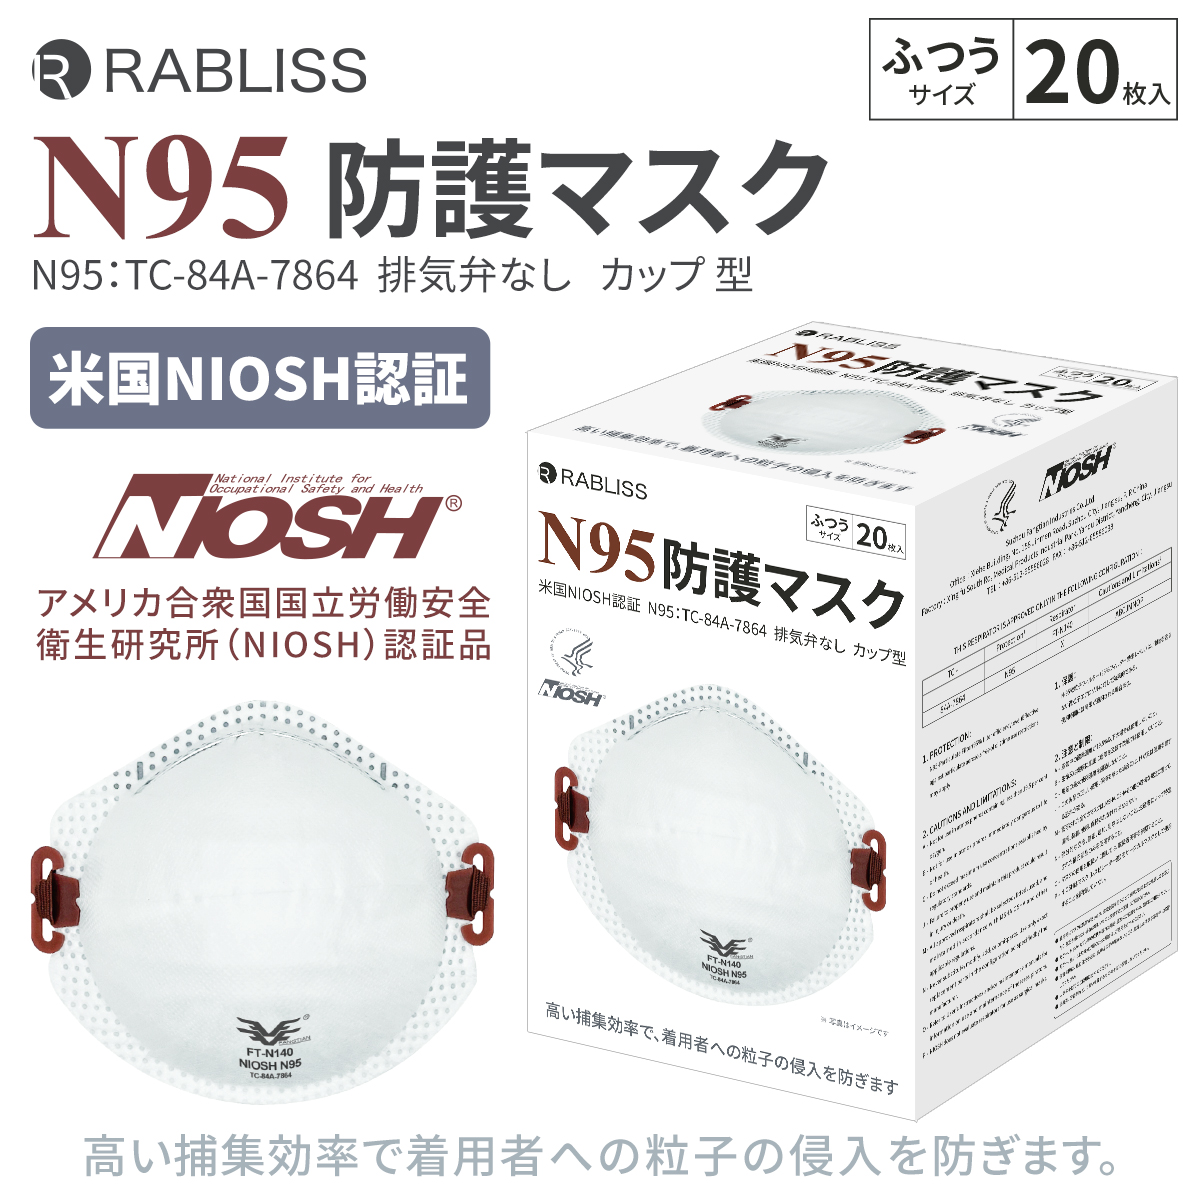  RABLISS N95 マスク カップ型 20枚入